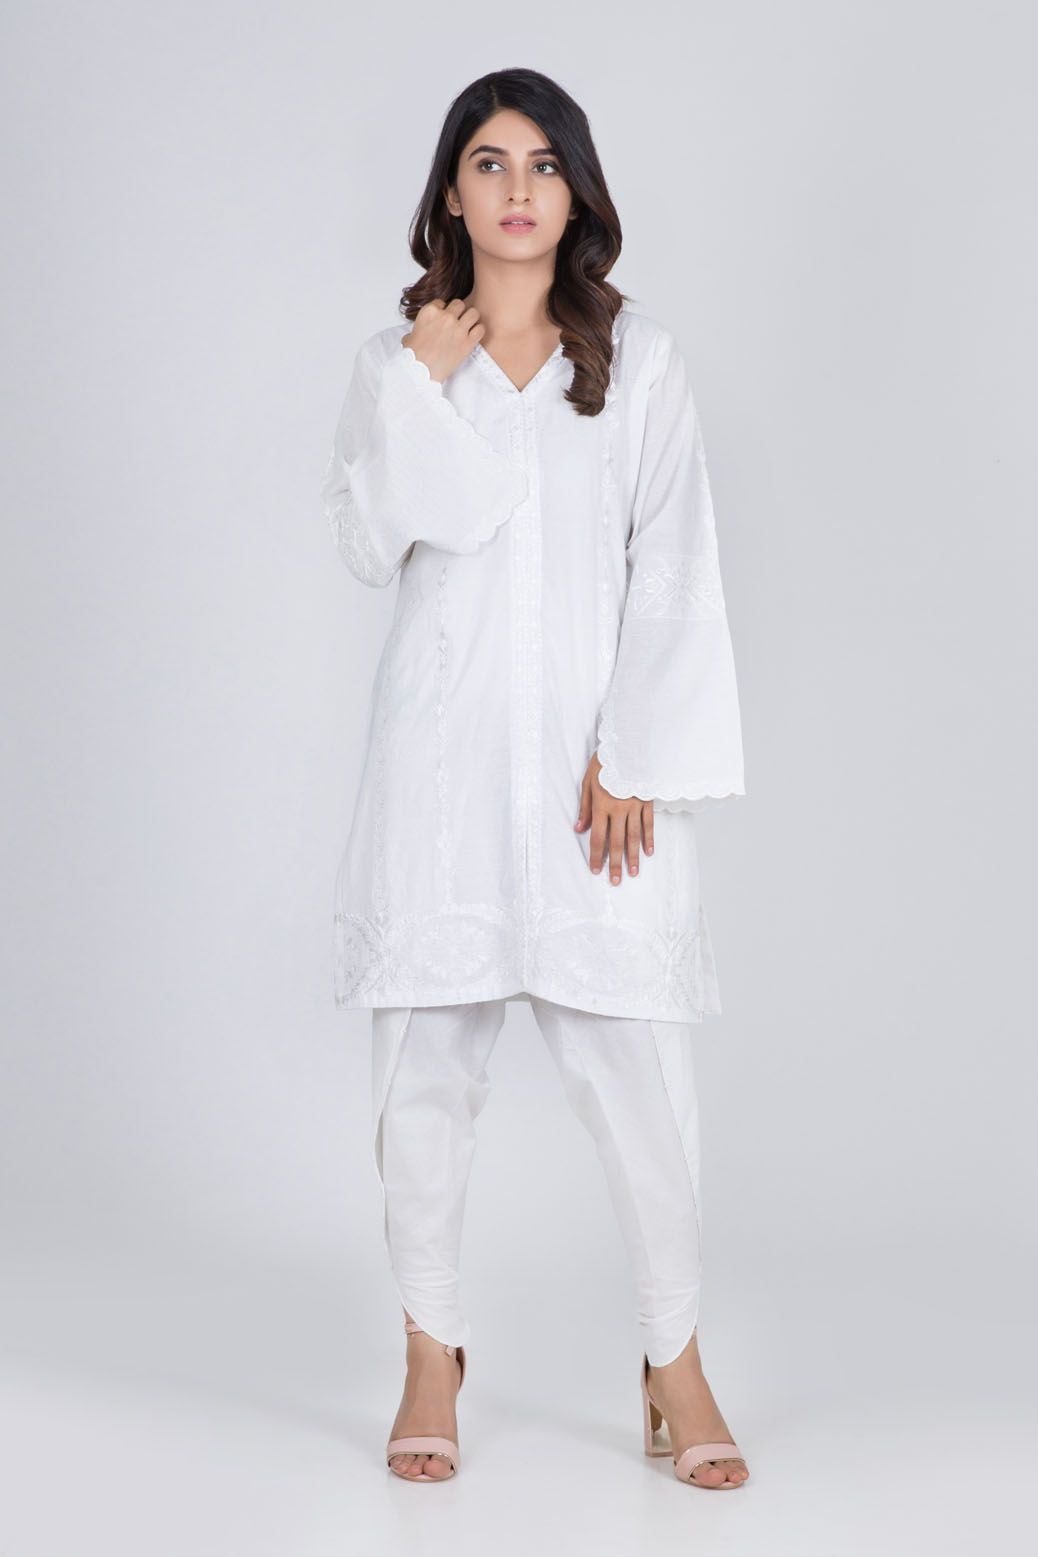 Bonanza Satrangi White Lawn Suit Wbn192p001 White - Lawncollection.pk